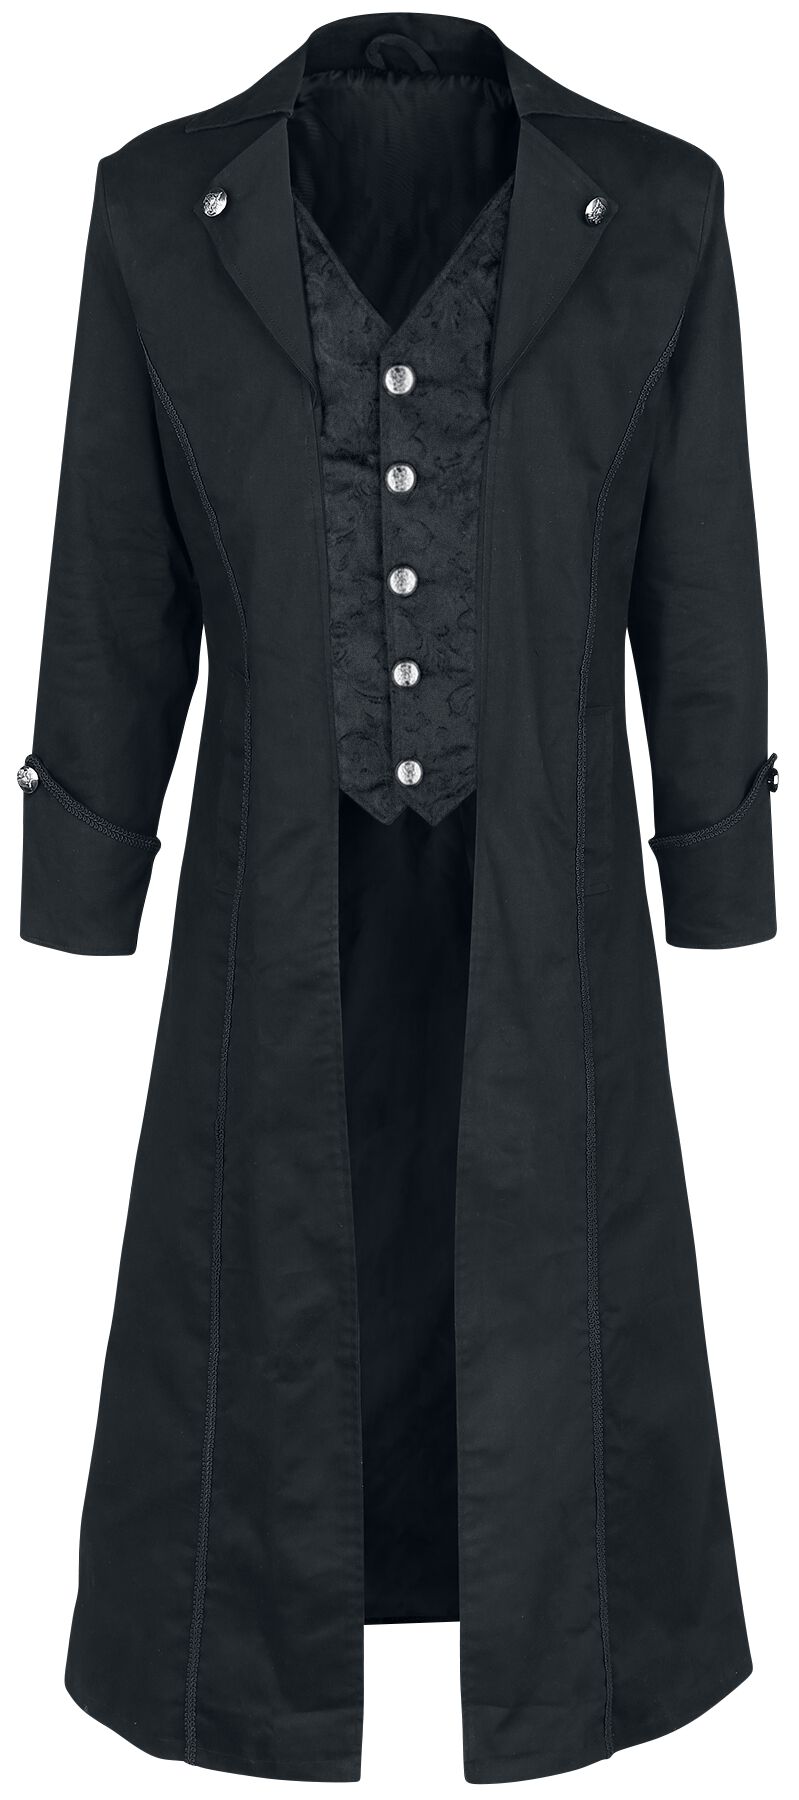 altana industries - gothic militÃ¤rmantel - dark brocade coat - m bis xxl - fÃ¼r mÃ¤nner - grÃ¶ÃŸe xxl - schwarz uomo